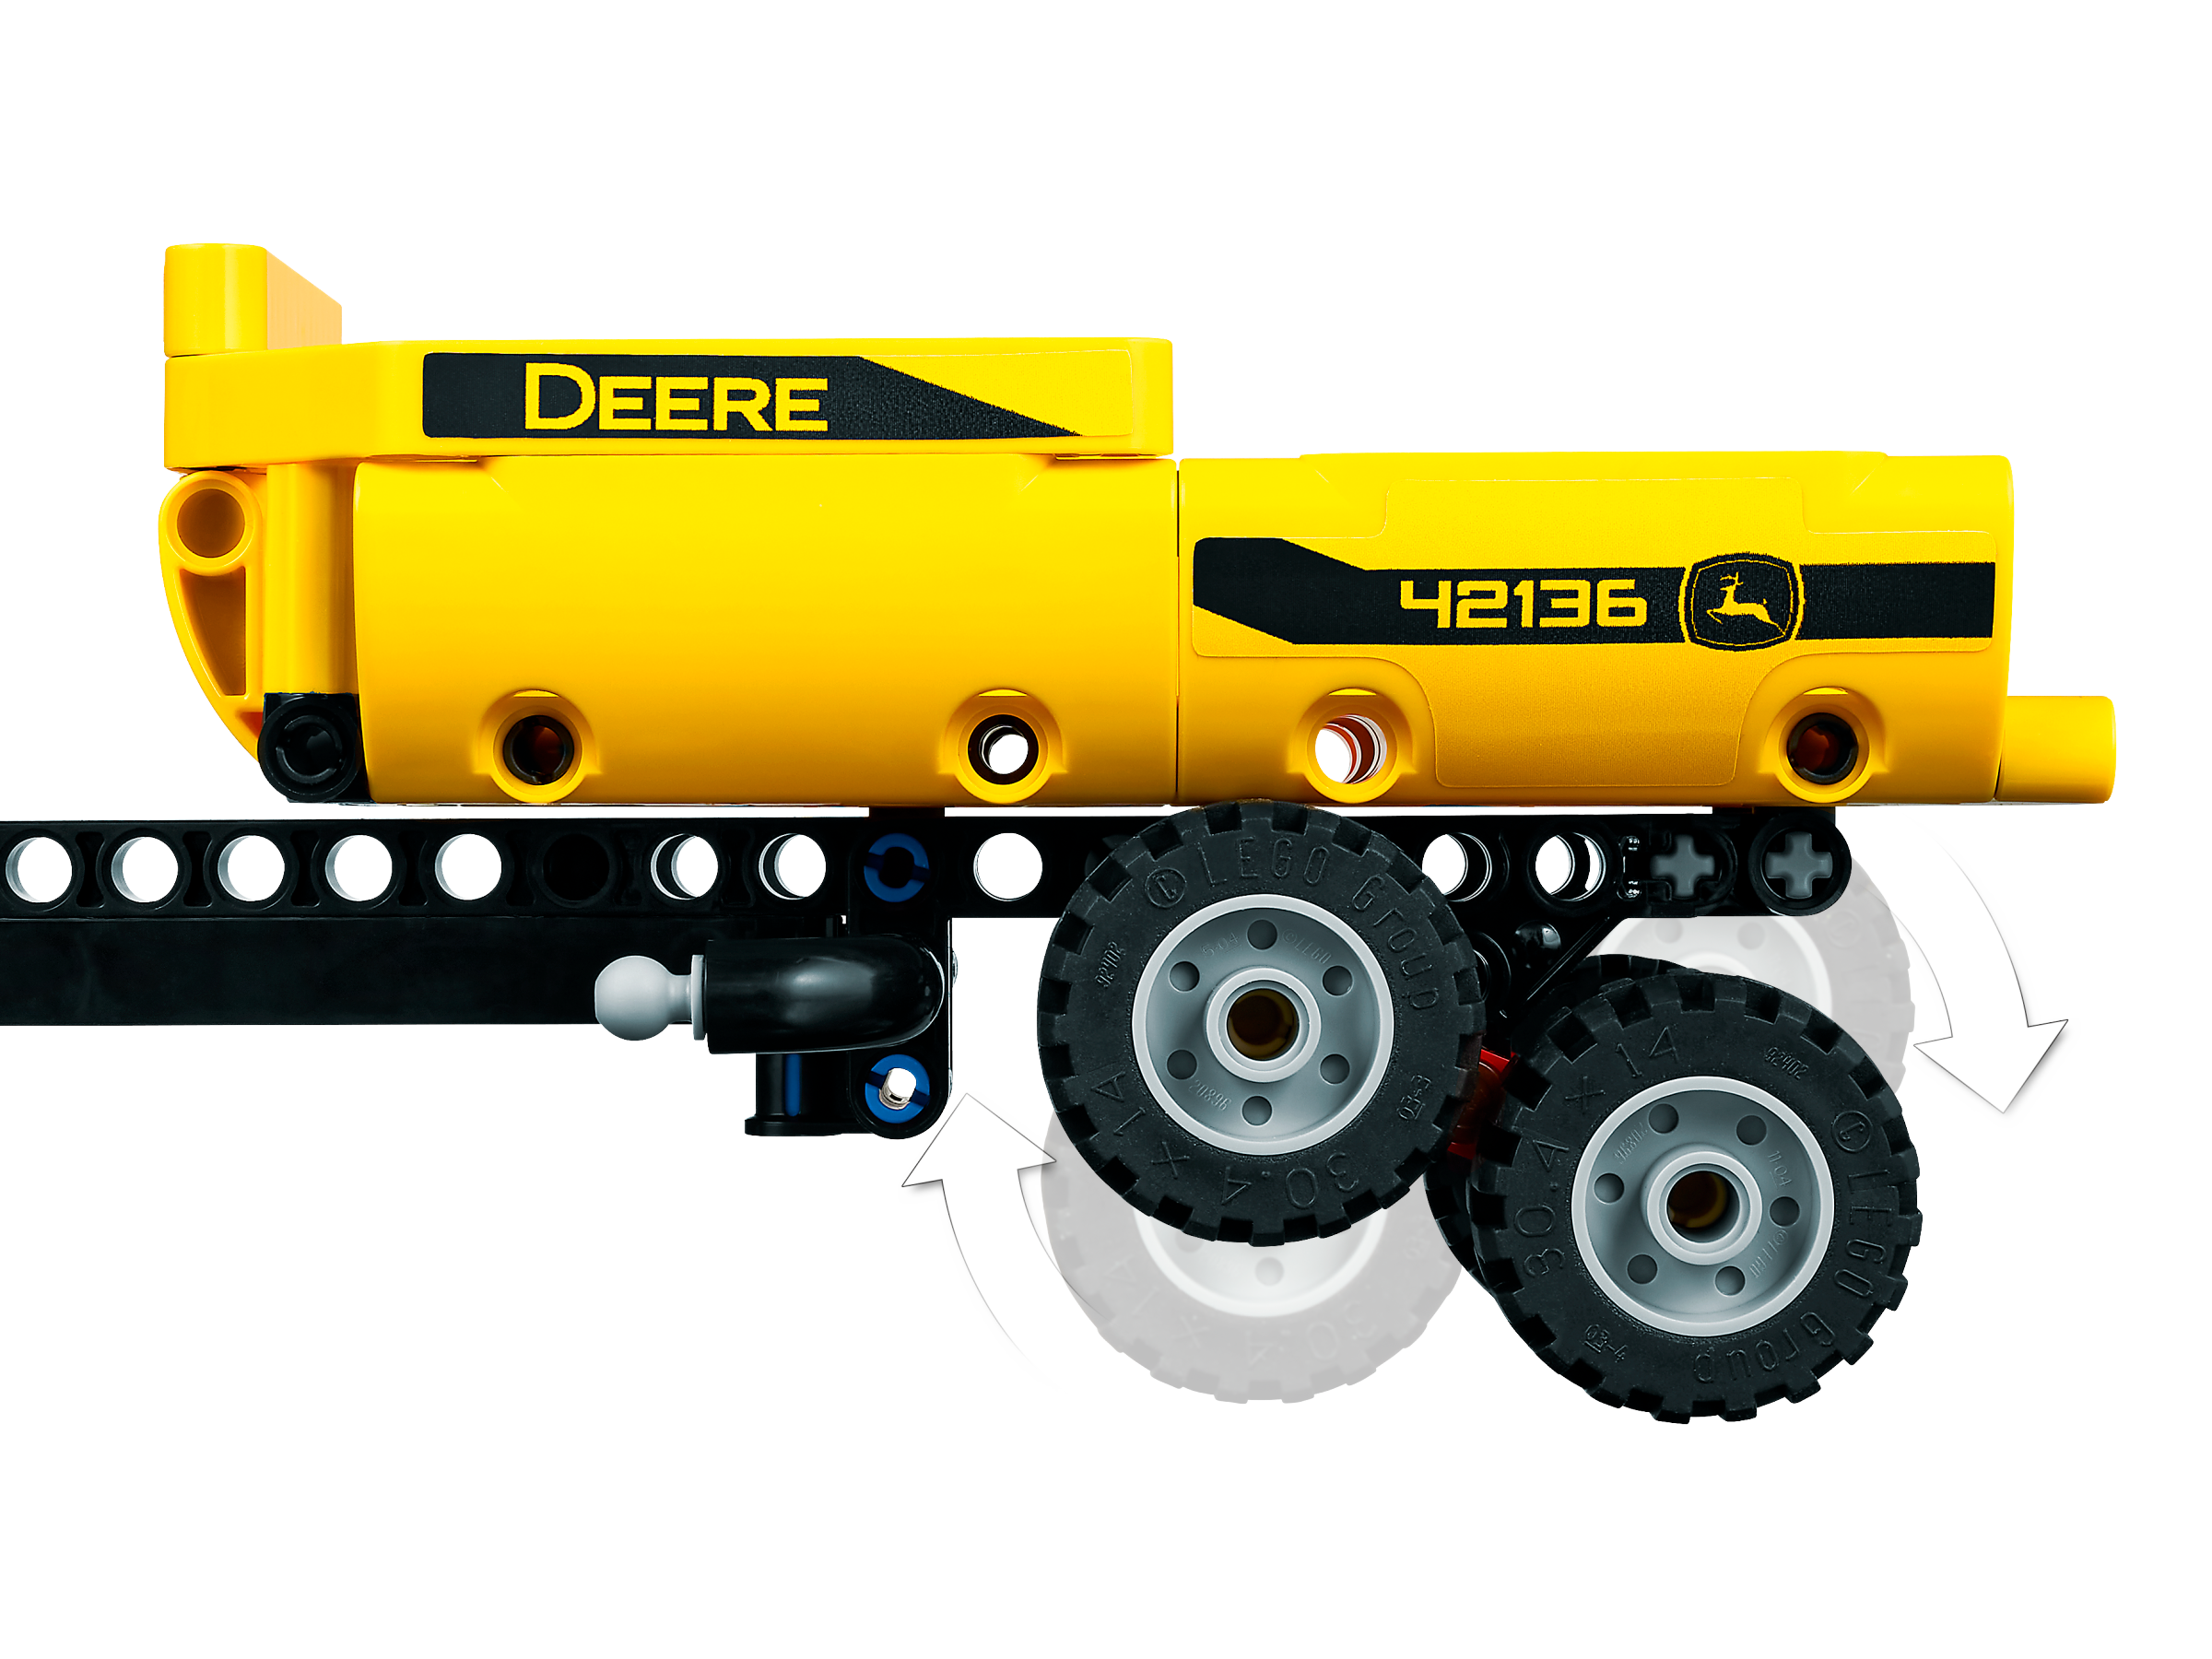 Tracteur John Deere - Lego Technic — Juguetesland